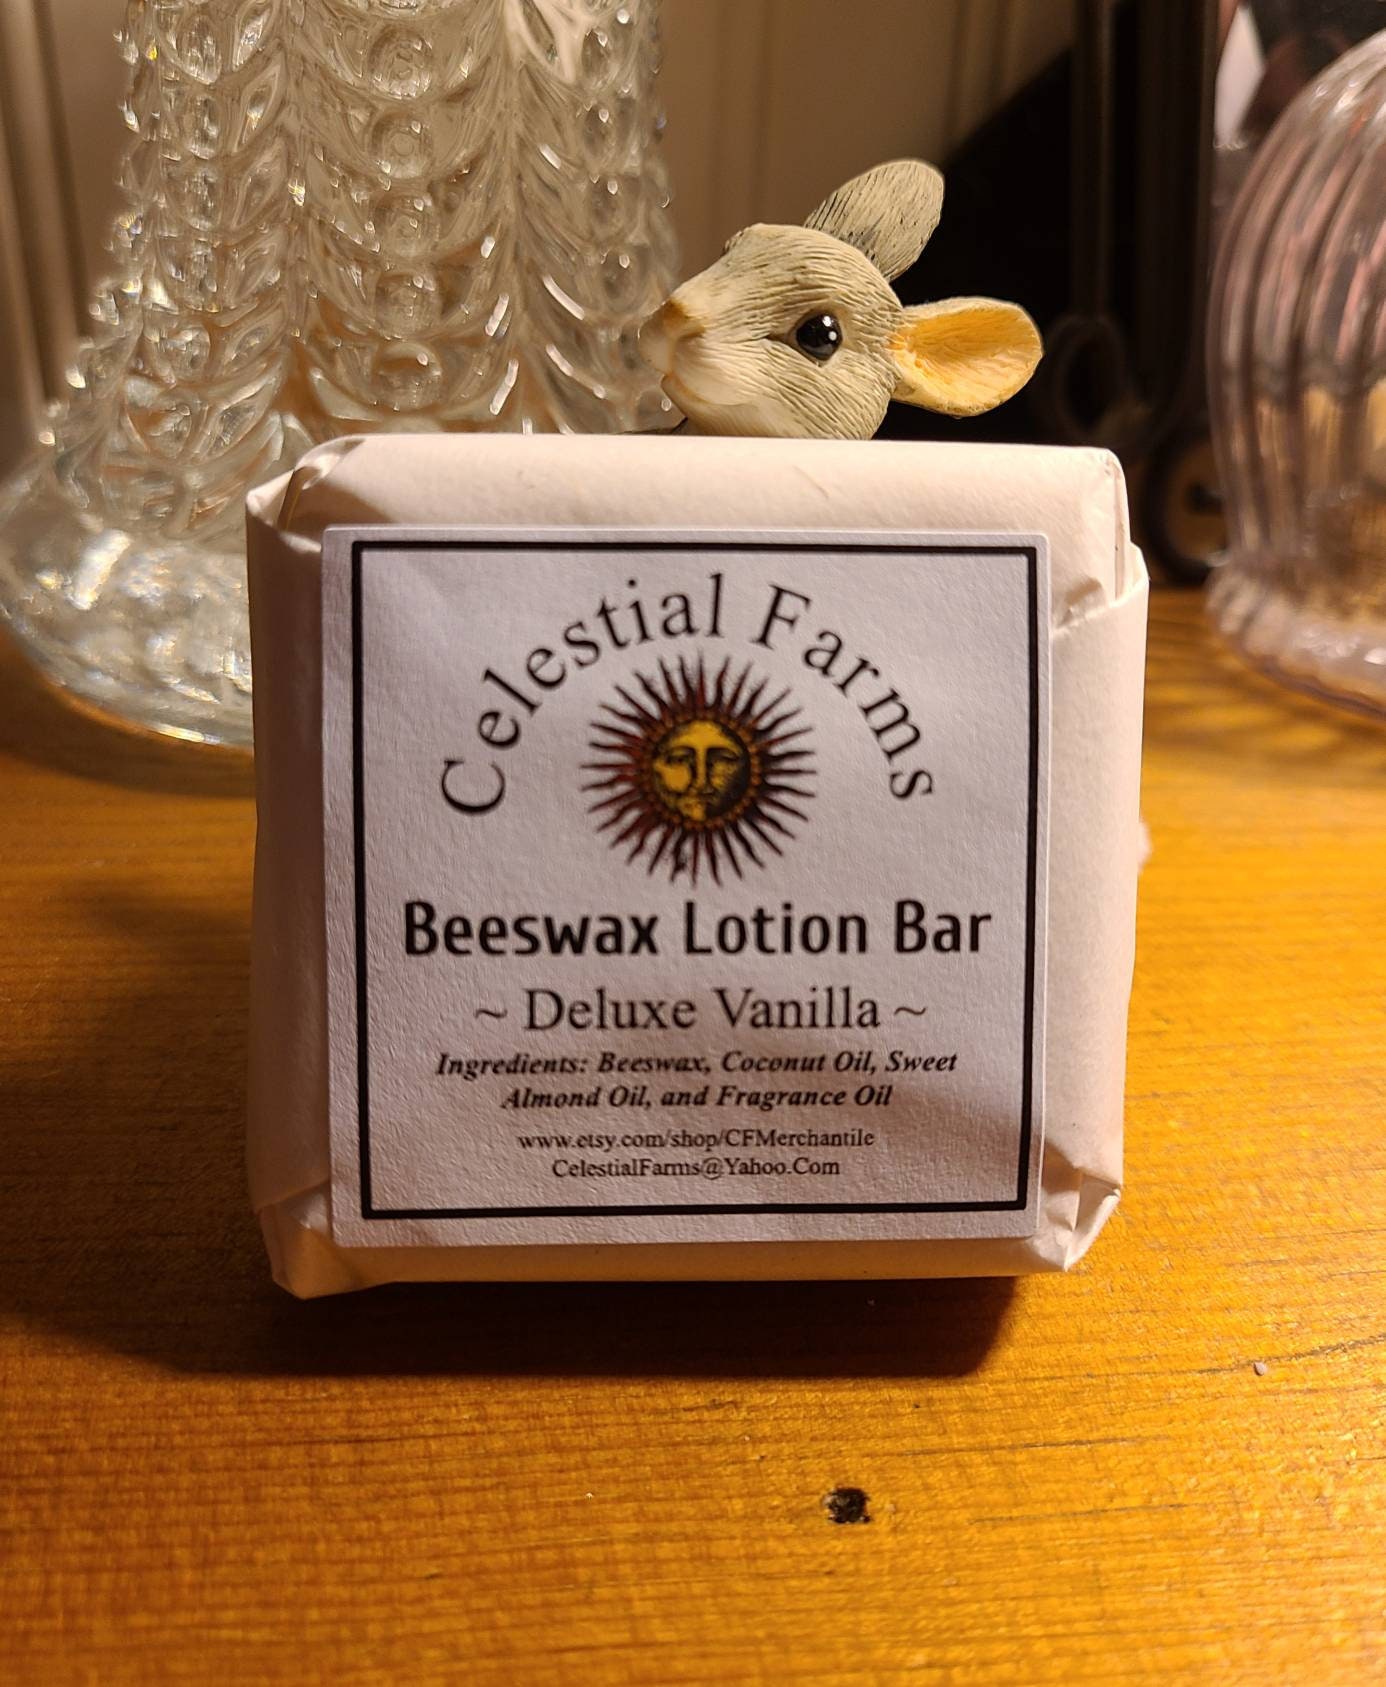 Natural Bees Wax Lotion Bar Deluxe Vanilla Beeswax pic